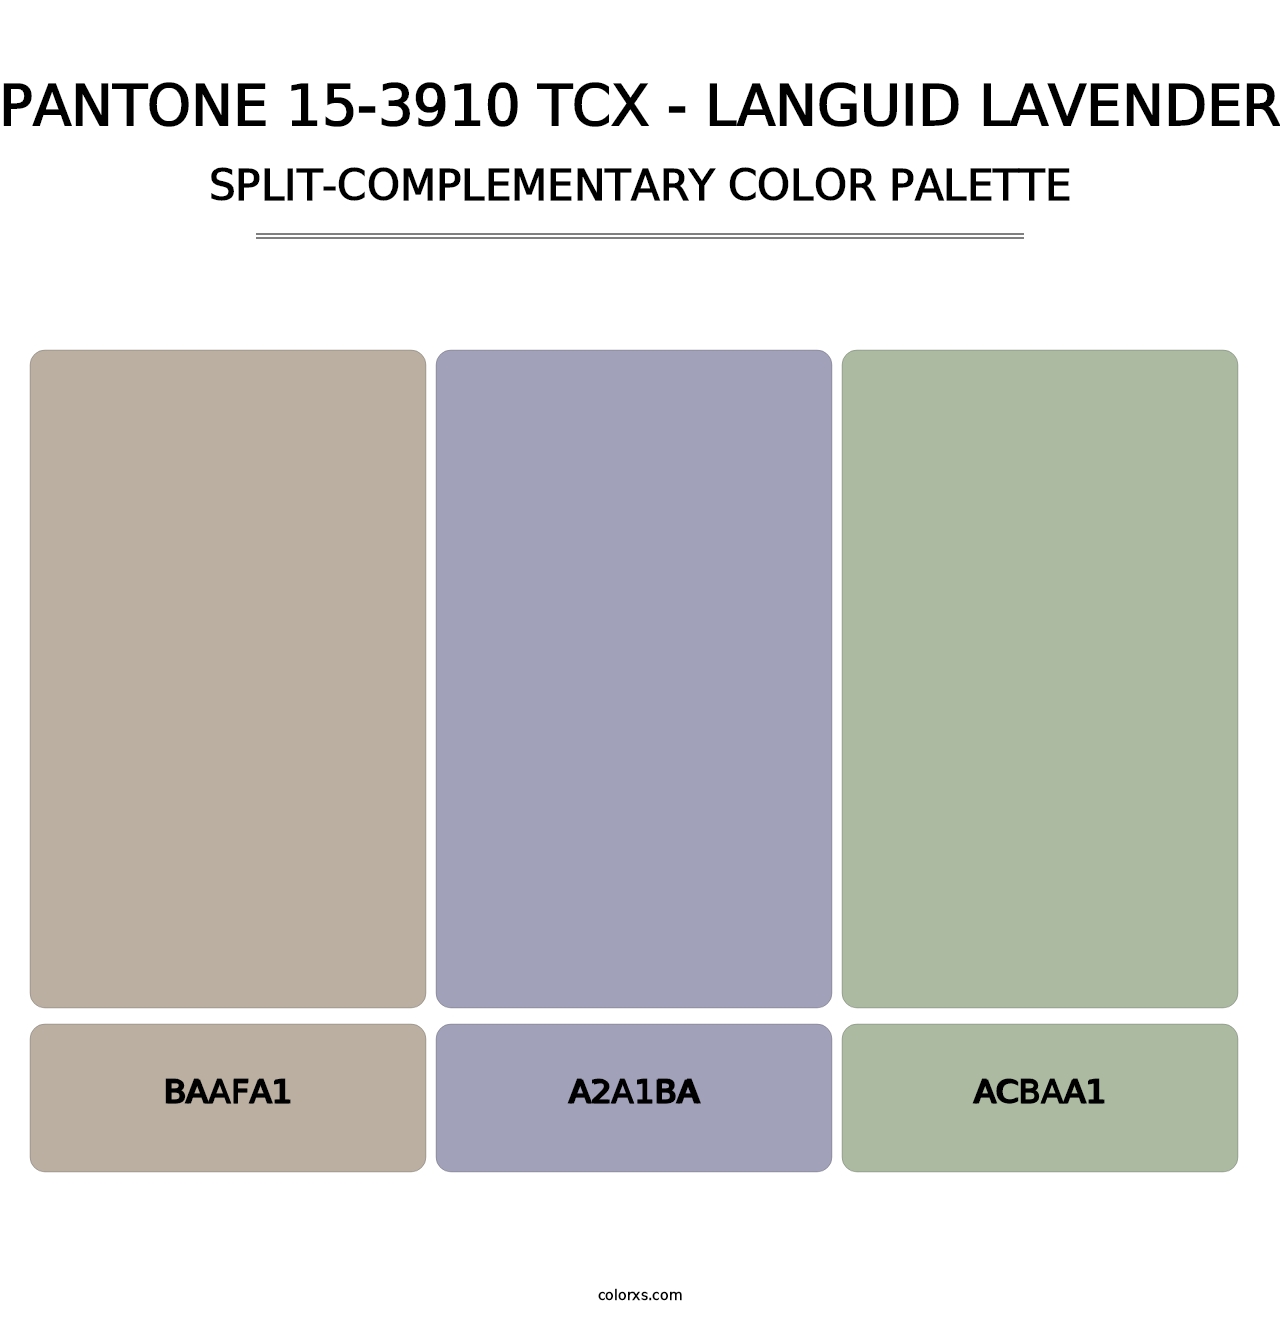 PANTONE 15-3910 TCX - Languid Lavender - Split-Complementary Color Palette